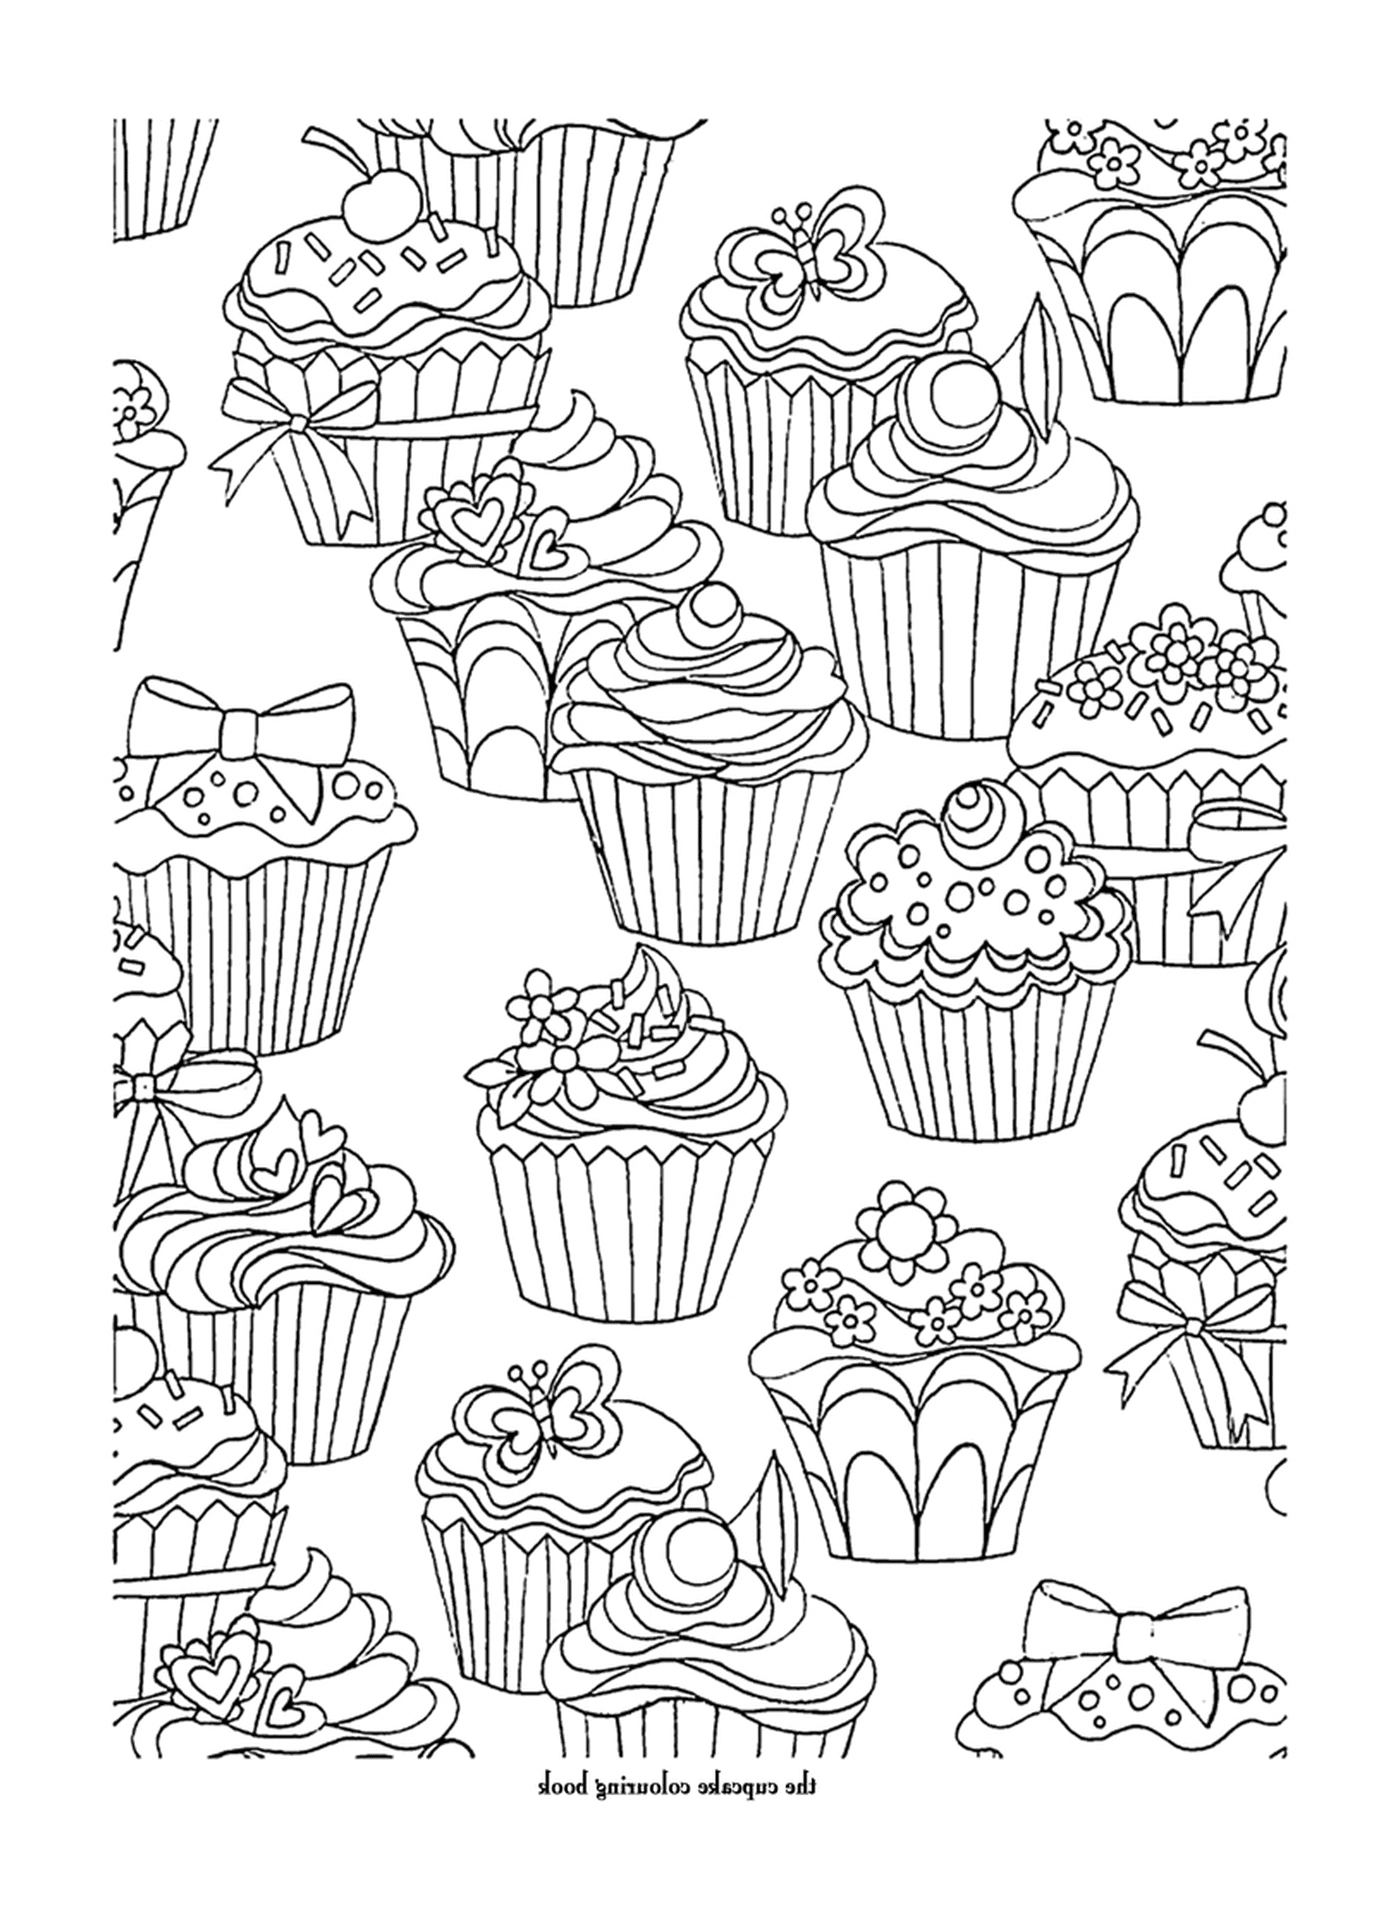  ein Muster von vielen Cupcakes 